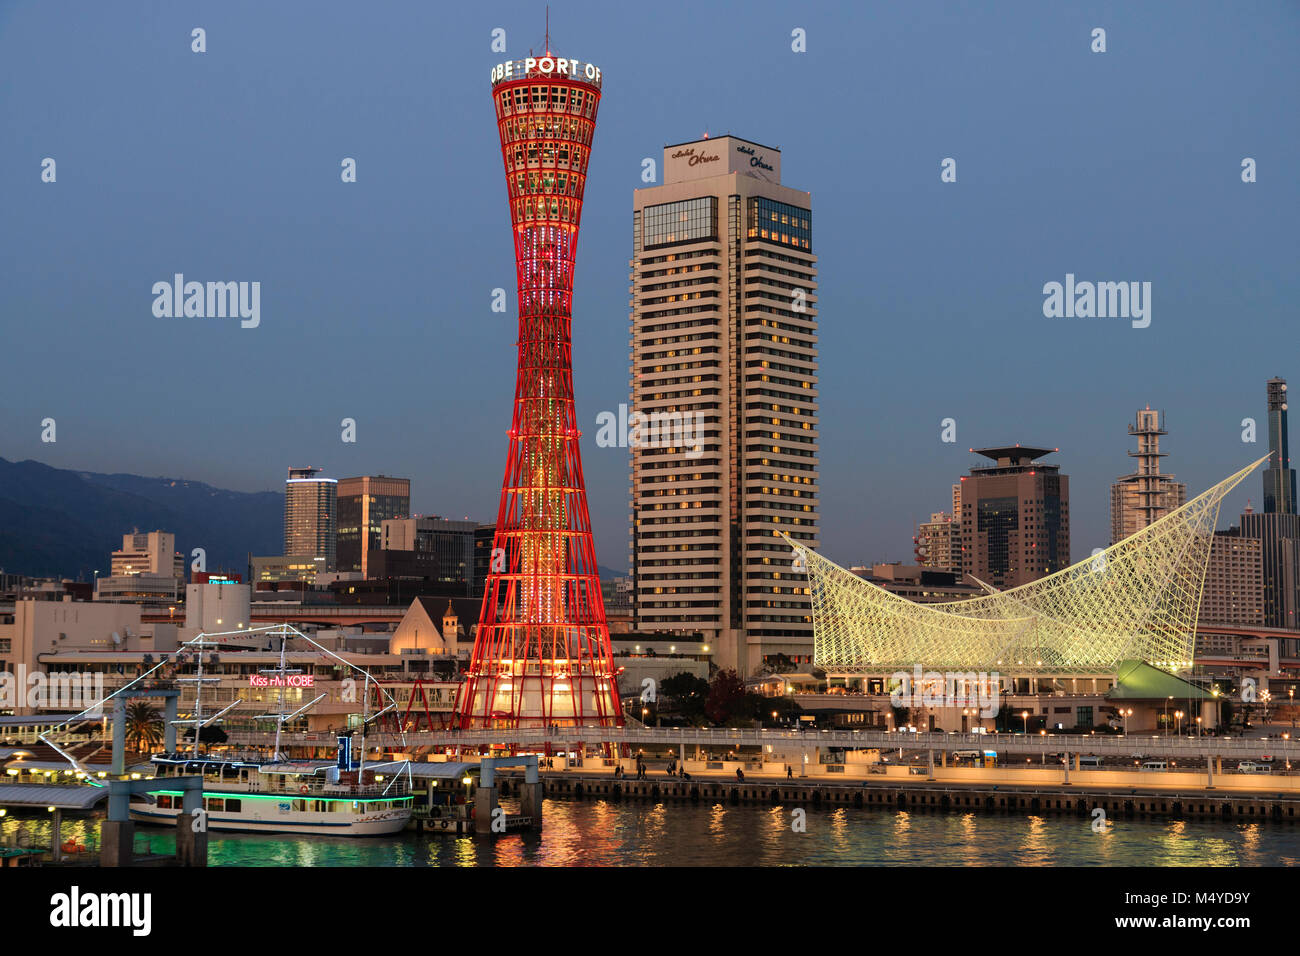 Le Japon, Kobe. Kobe port Tower, rouge avec l'Okura Hotel derrière, et le musée maritime. La nuit, crépuscule période. Banque D'Images